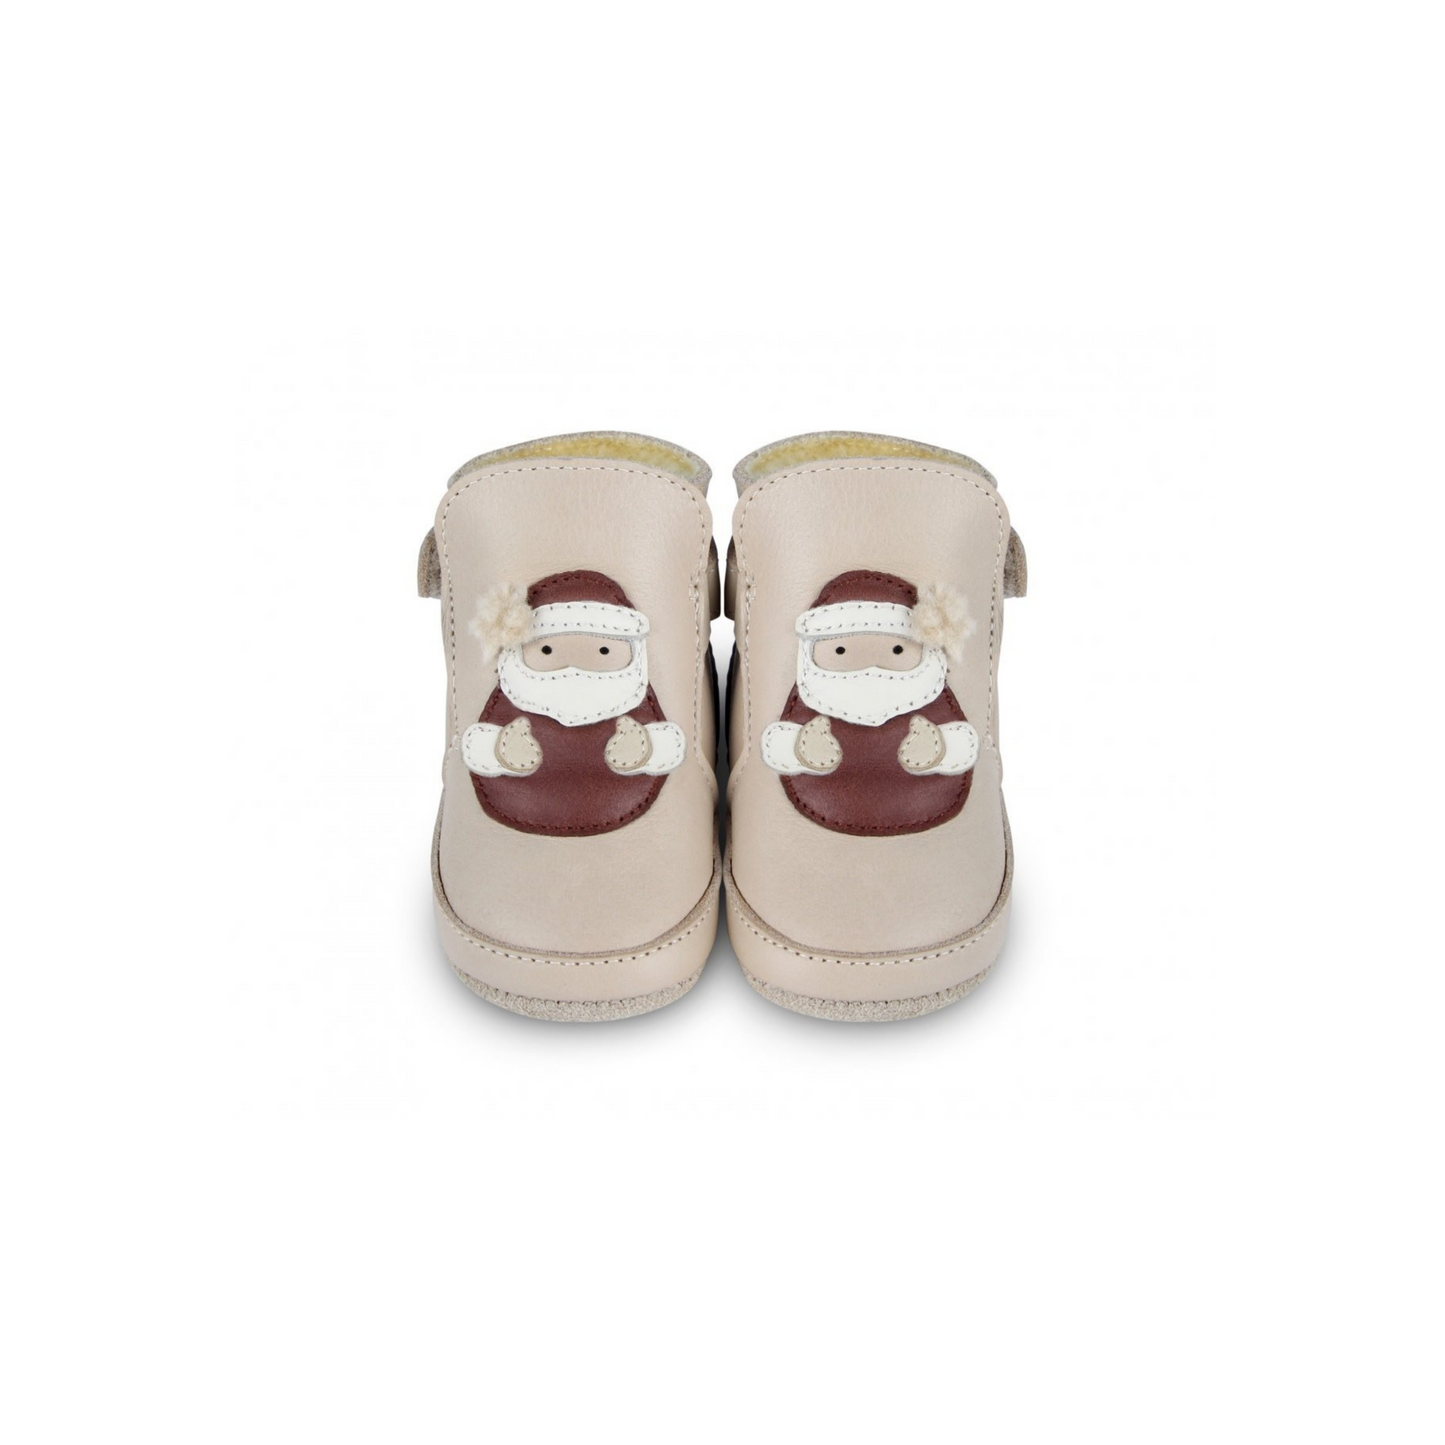 Aggas Lining Boots - Santa